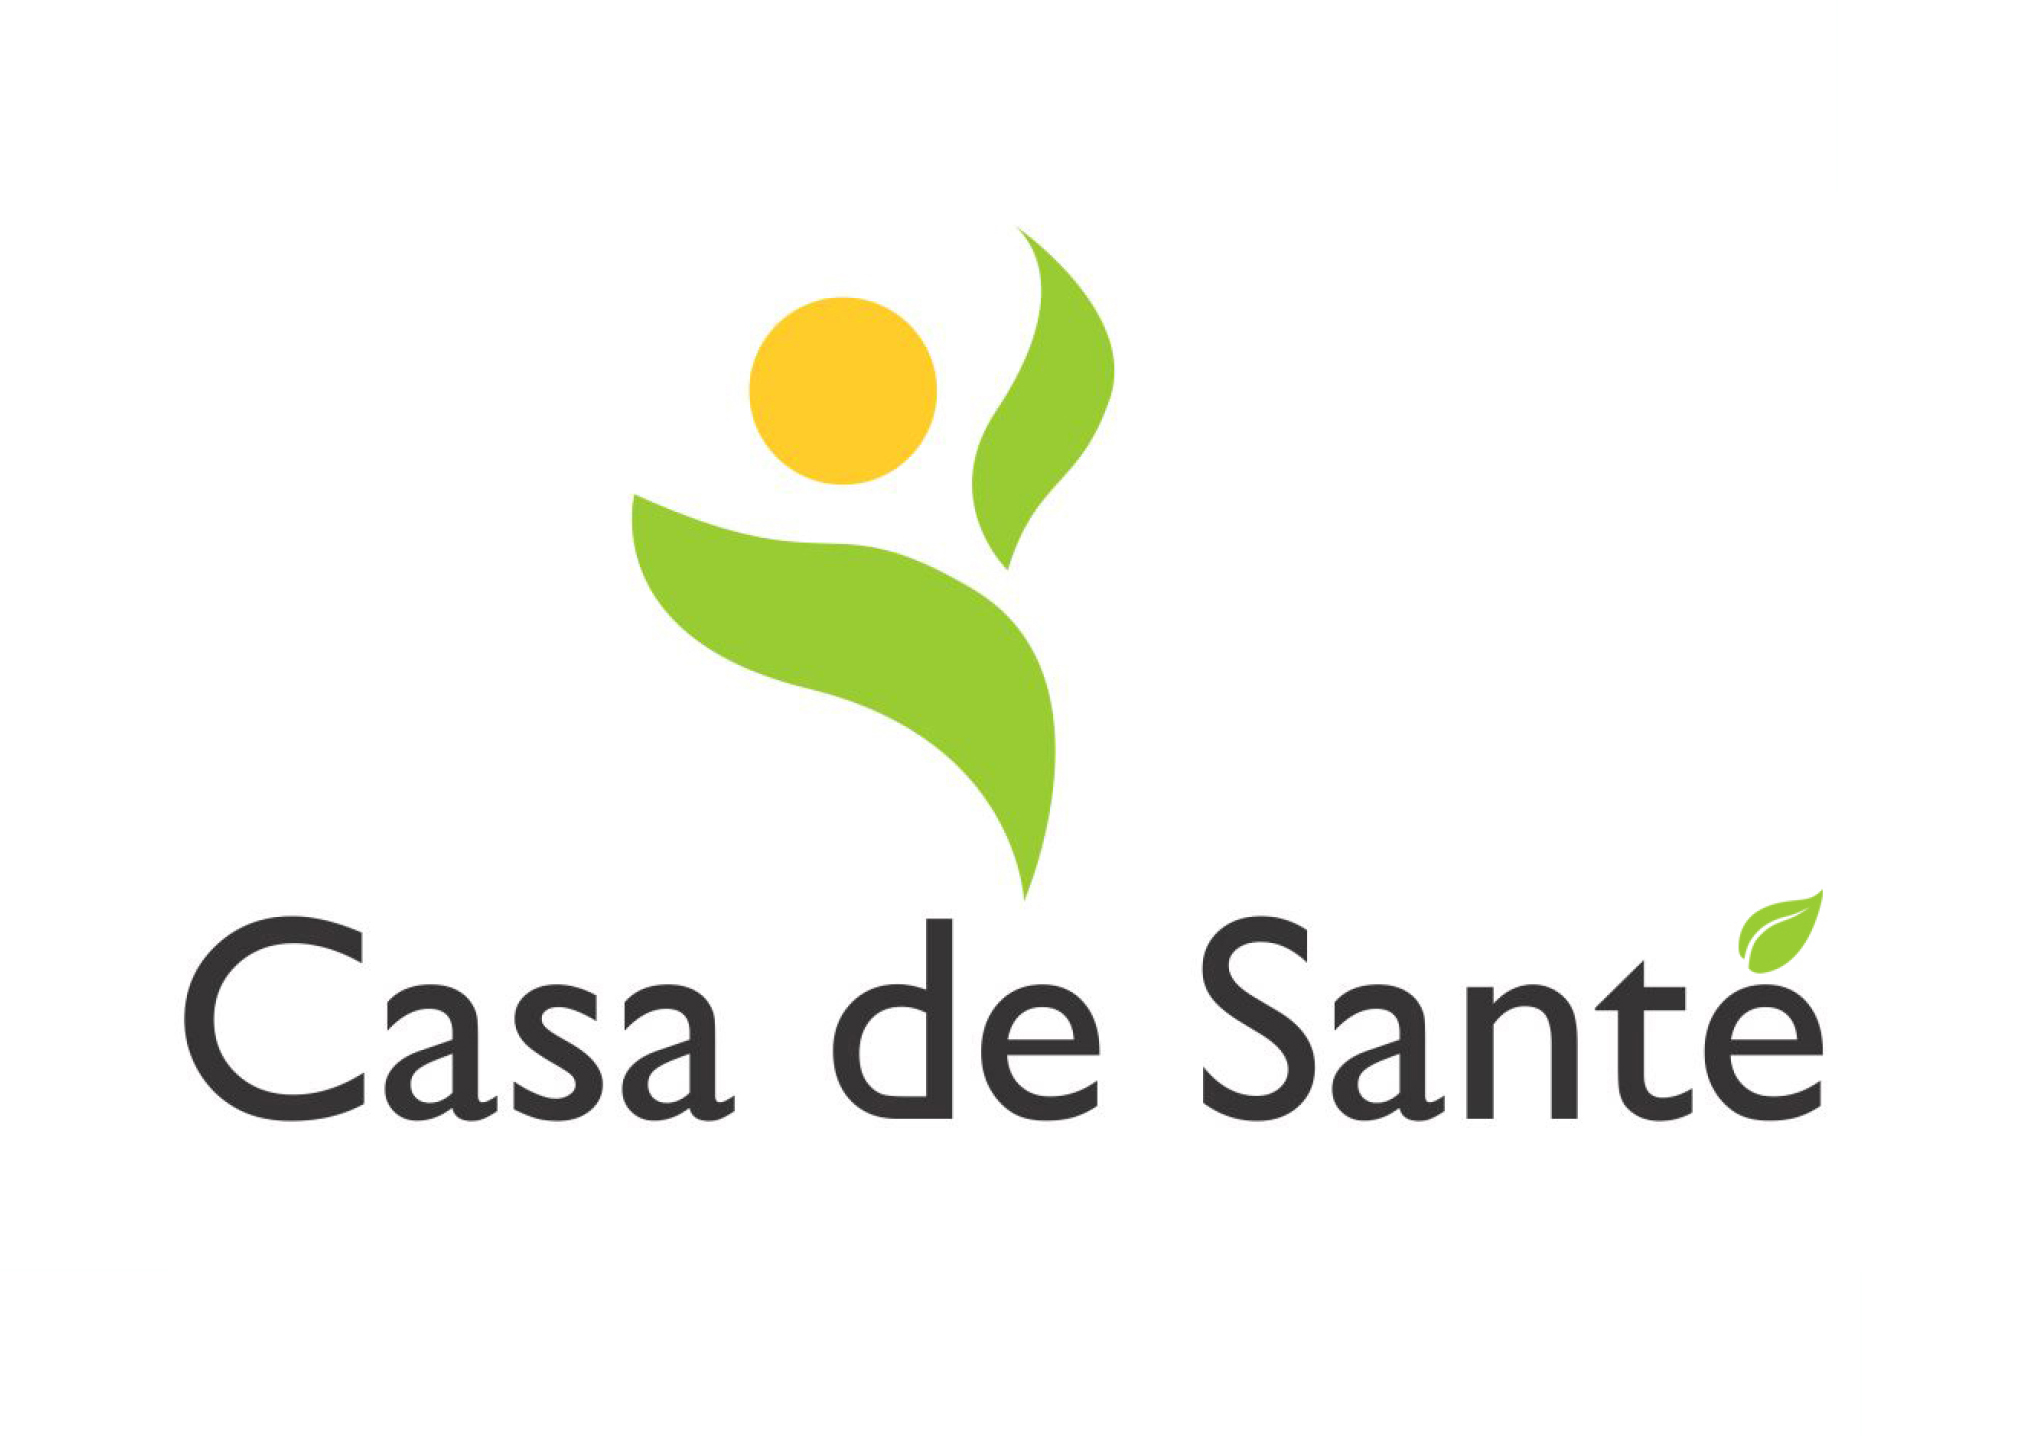 Casa de sante logo (high res) 1